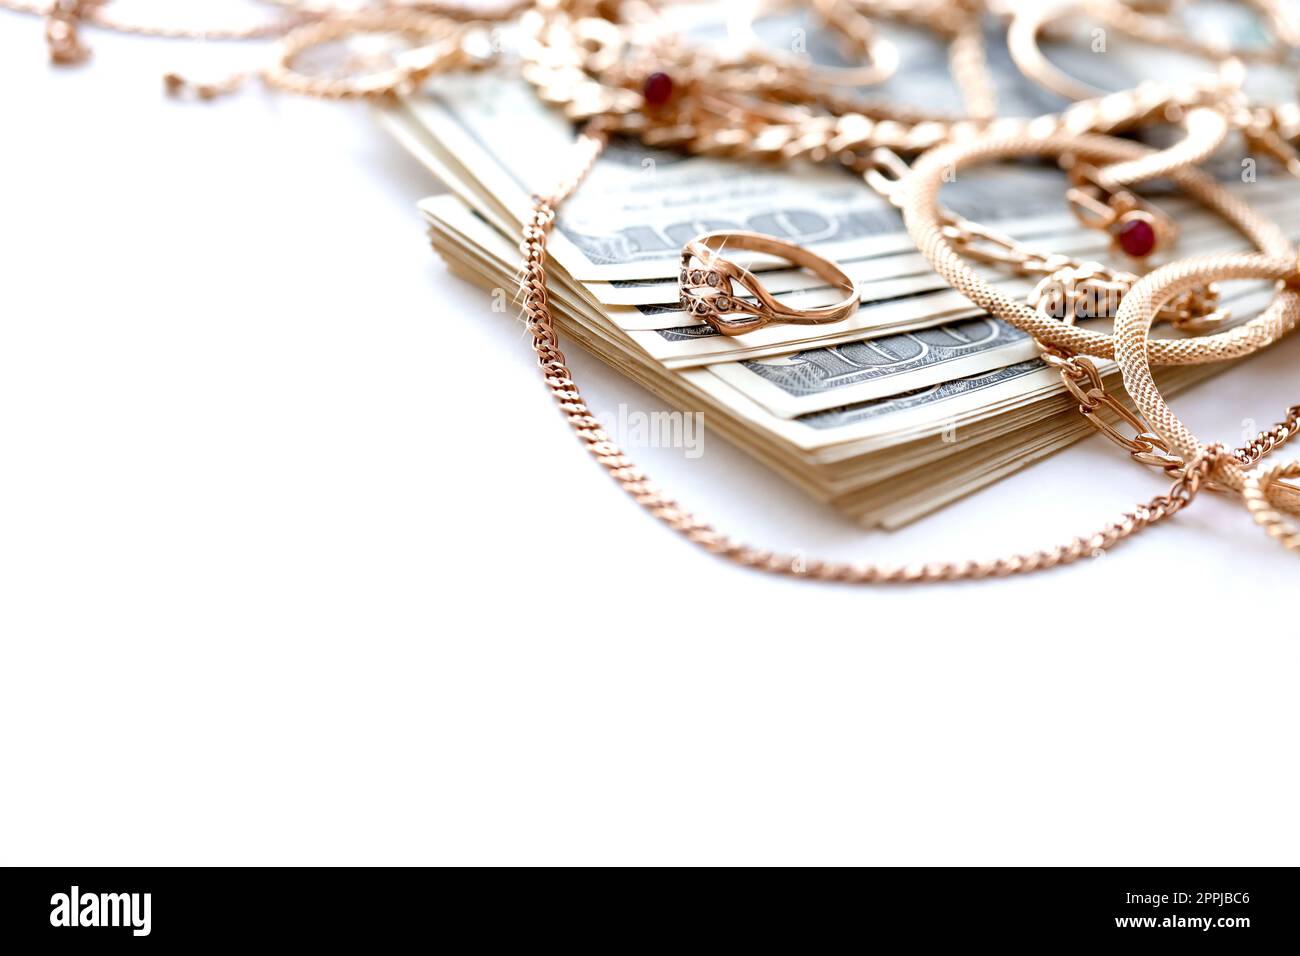 Beaucoup d'anneaux de bijoux en or coûteux, boucles d'oreilles et colliers avec une grande quantité de billets de dollar US sur fond blanc. Prêteur sur gage ou bijouterie Banque D'Images